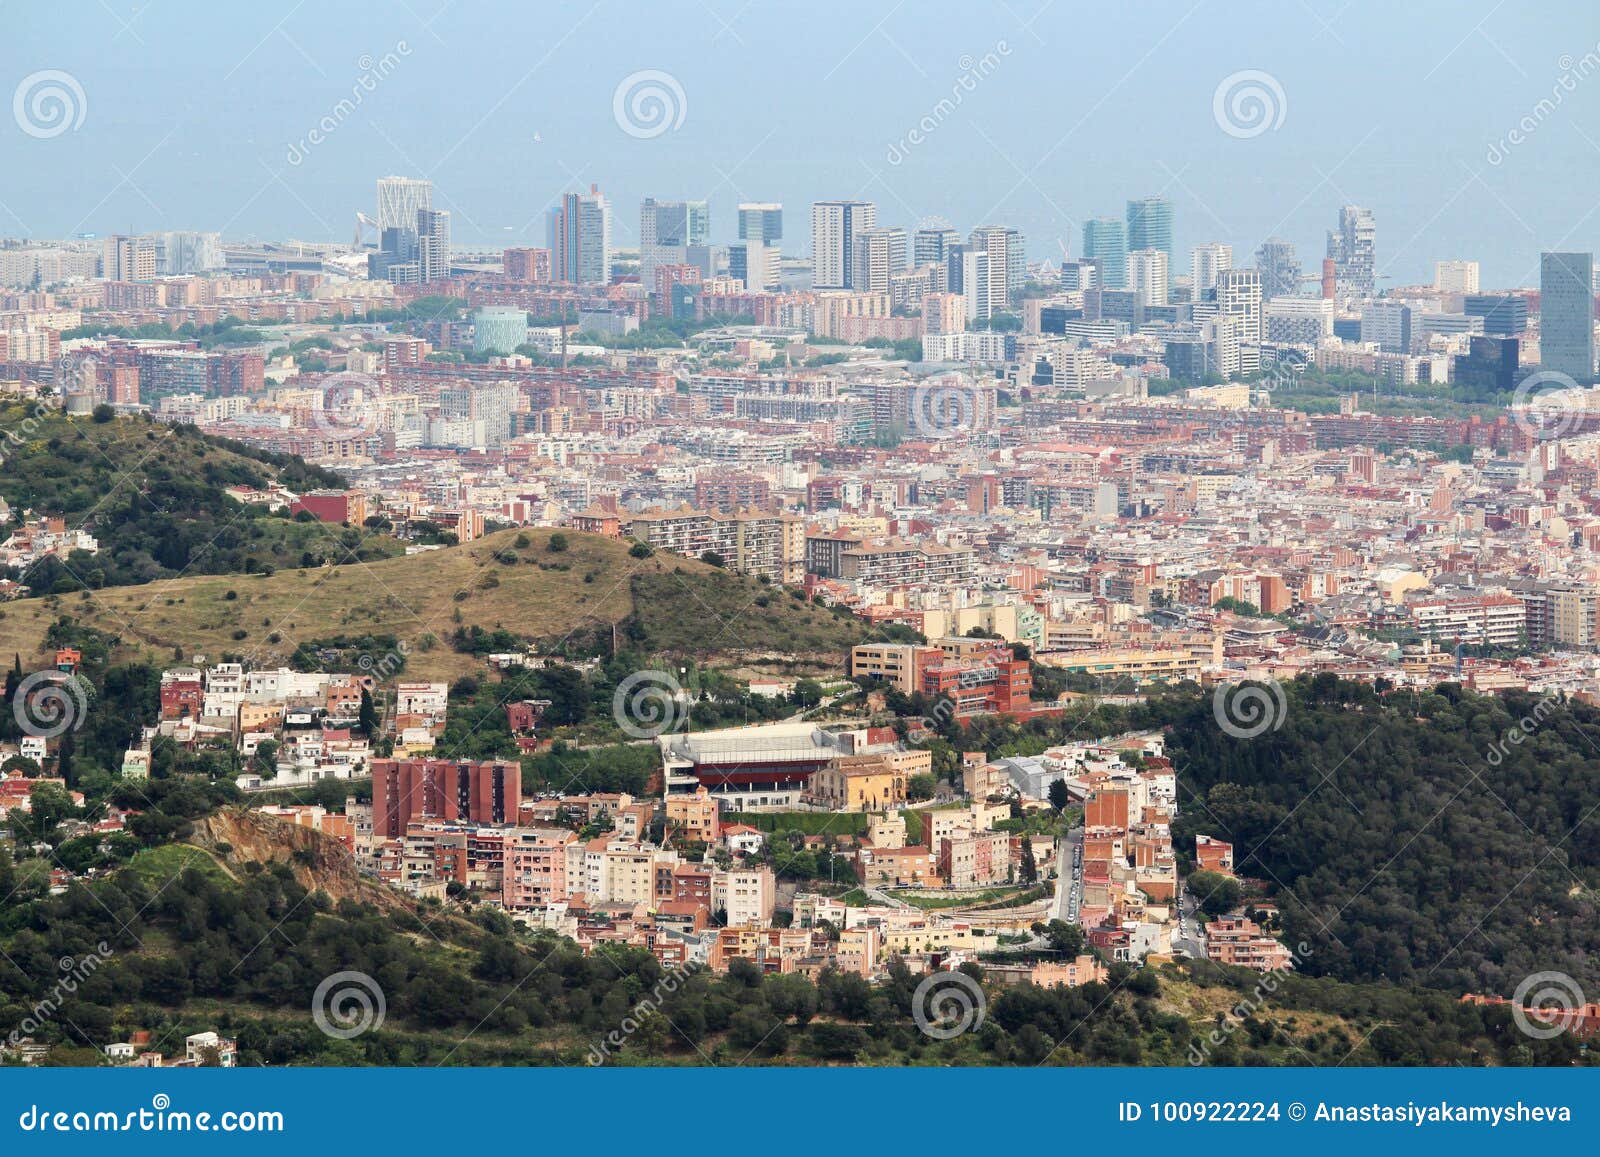 Una vista panoramica di Barcellona da Tibidabo. Tibidabo è una montagna che trascura Barcellona, Catalogna, Spagna È la montagna più alta in Serra de Collserola